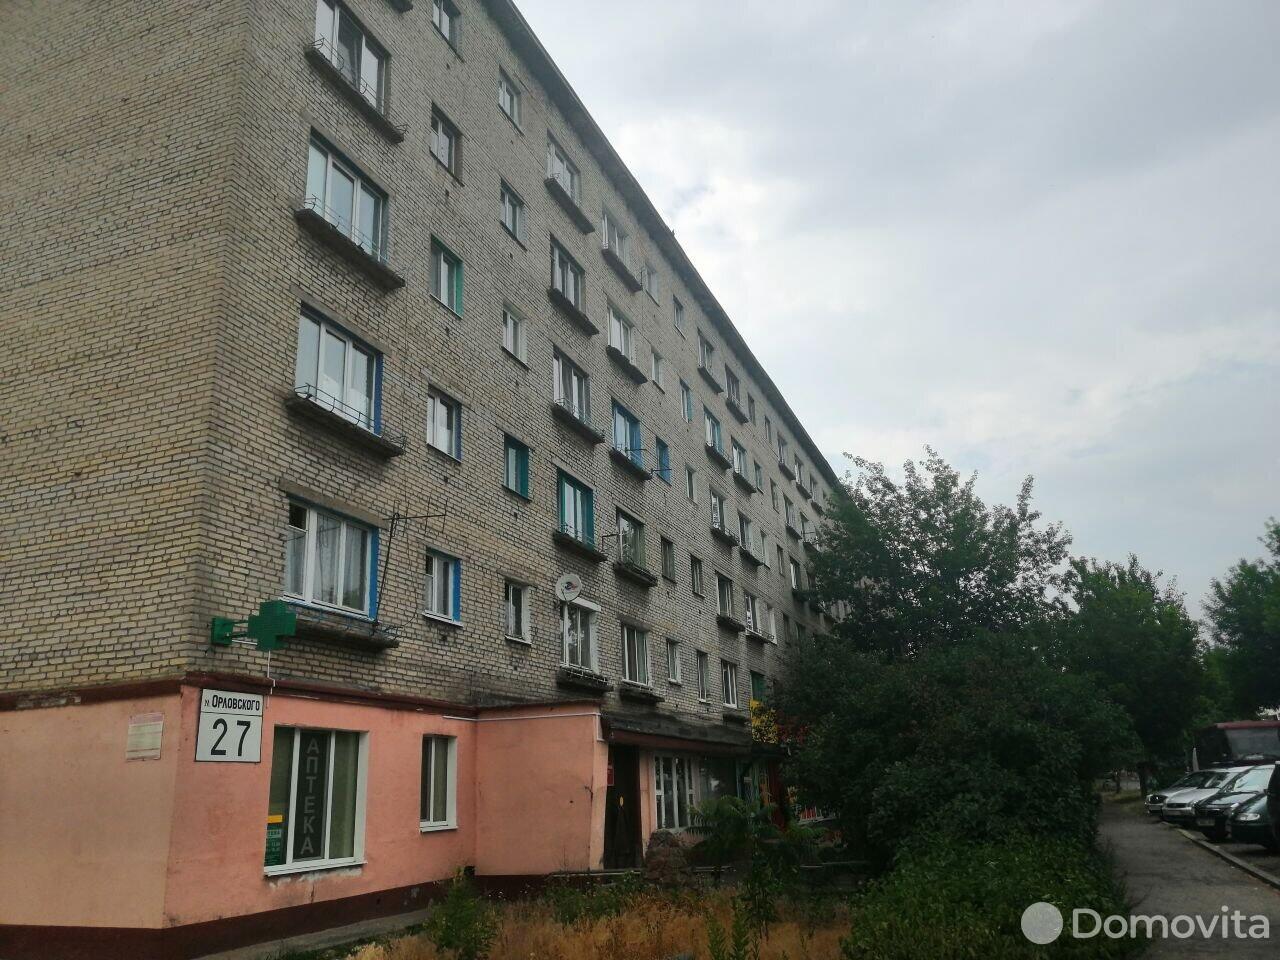 квартира, Бобруйск, ул. Орловского, д. 27, стоимость продажи 36 883 р.